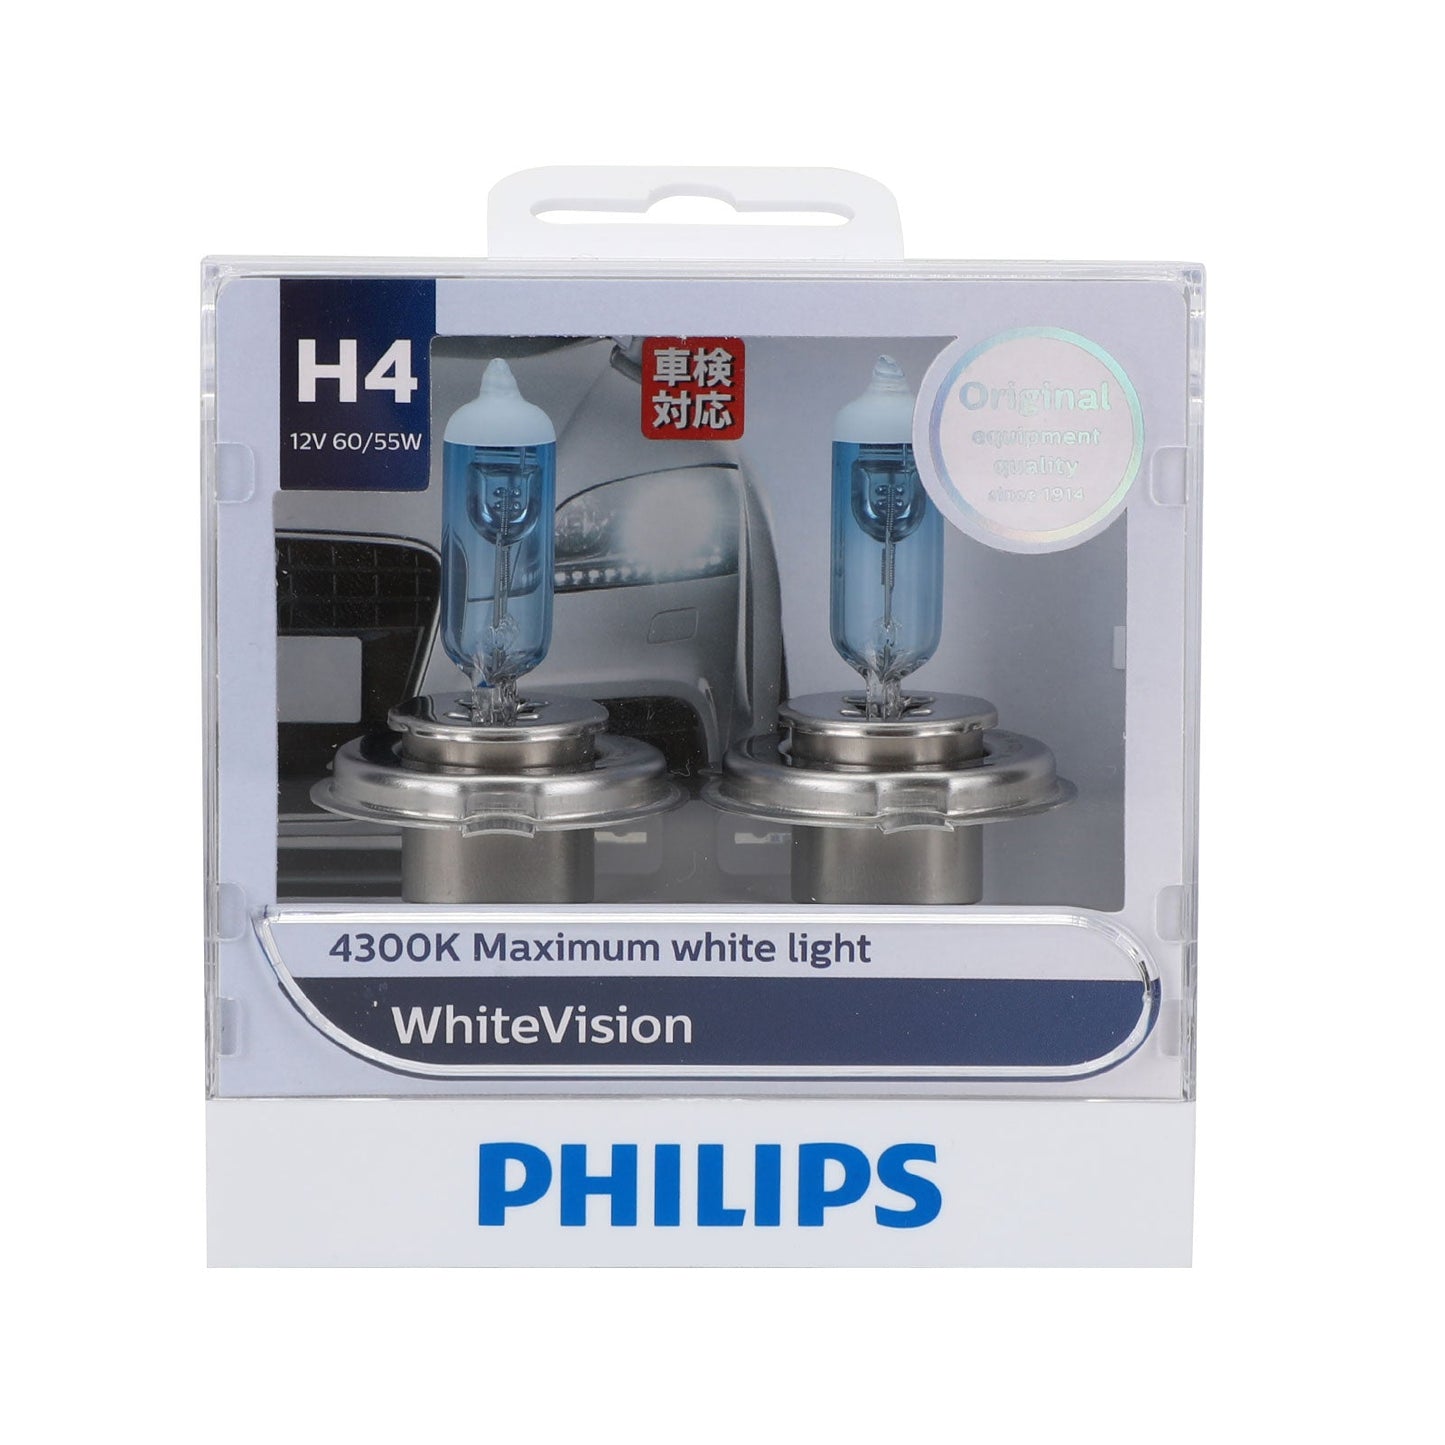 For Philips WhiteVision H4 4300K 12V 60/55W Headlight 12342WHVS2 Light